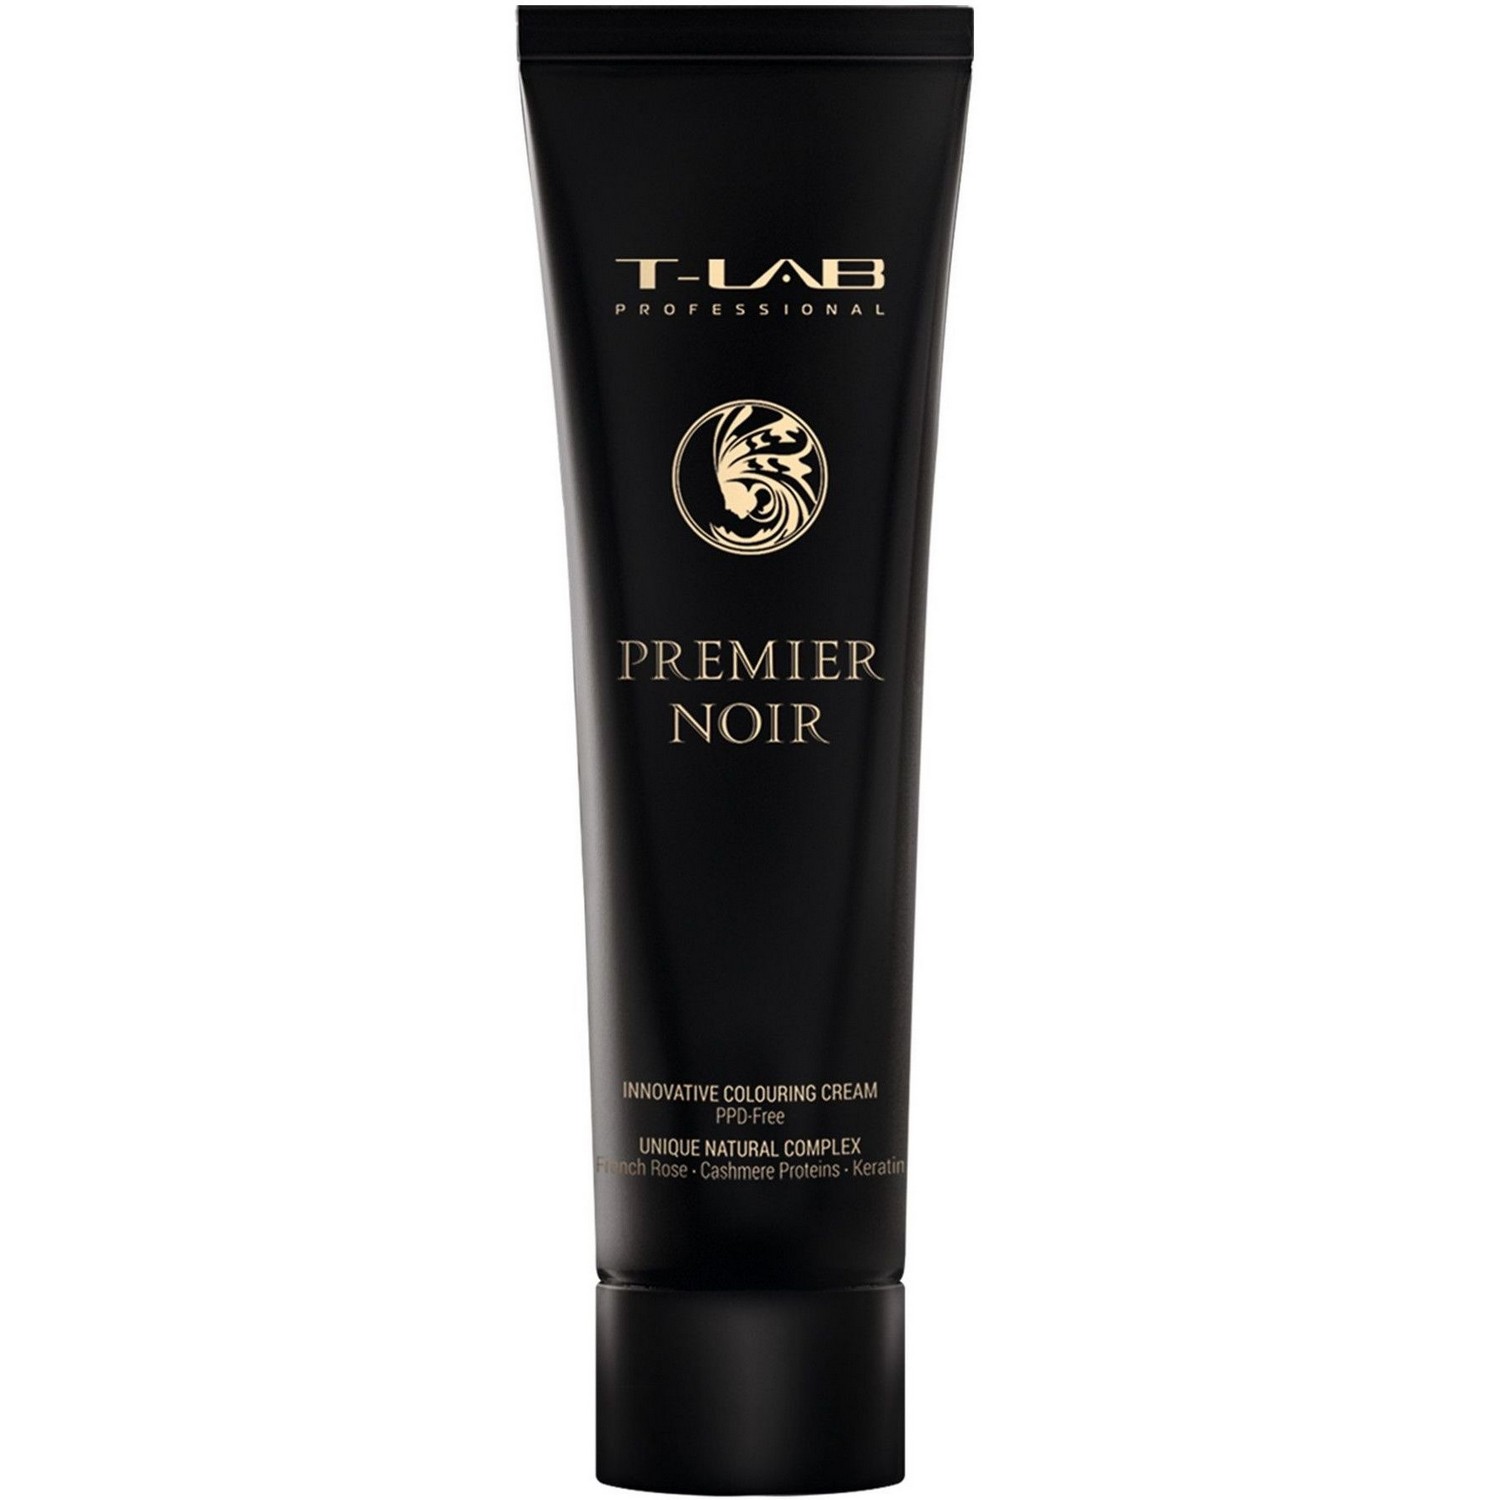 Крем-краска T-LAB Professional Premier Noir colouring cream, оттенок 00 (clear) - фото 1